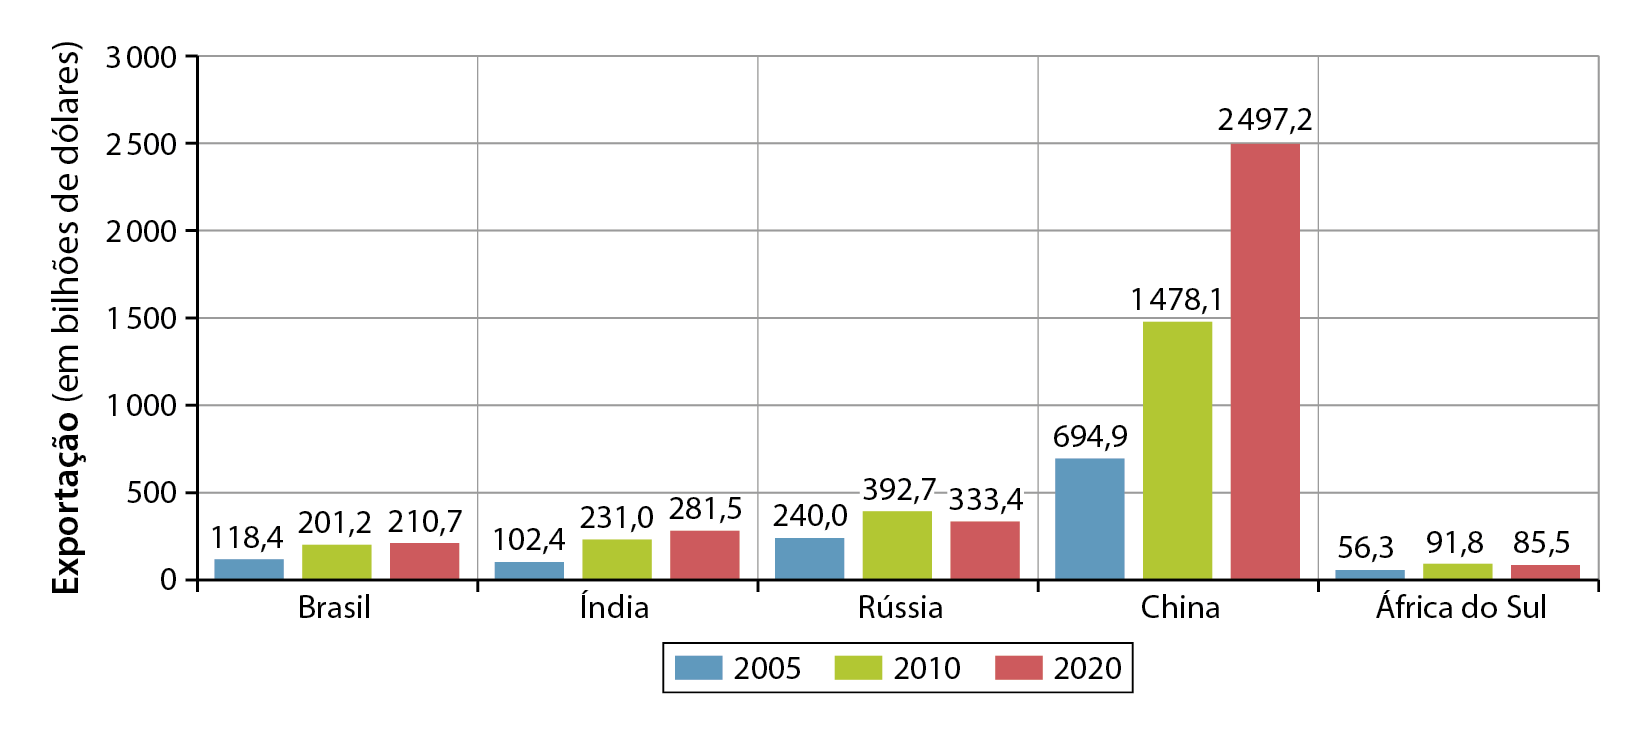 Gráfico. Países dos BRICS: exportação  (de 2005 a 2020). 
Gráfico de colunas com dois eixos. No eixo vertical, o valor das exportação (em bilhões de dólares), que varia de 0 a 3.000. No eixo horizontal, os países dos BRICS, Brasil, Índia, Rússia, China e África do Sul. Três barras para cada país indicam os anos 2005, 2010 e 2020. 
Brasil: 2005. 118, 4 bilhões de dólares. 2010: 201,2 bilhões de dólares. 2020. 210,7 bilhões de dólares.
Índia: 2005. 102,4 bilhões de dólares. 2010. 231 bilhões de dólares. 2020. 281,5 bilhões de dólares. 
Rússia: 2005. 240 bilhões de dólares. 2010. 392,7 bilhões de dólares. 2020. 333,4 bilhões de dólares. 
China: 2005. 649,9 bilhões de dólares. 2010. Um trilhão e 478,1 bilhões de dólares. 2020. Dois trilhões e 491,2 bilhões de dólares. 
África do Sul: 2005. 56,3 bilhões de dólares. 2010. 91,8 bilhões de dólares. 2020. 85,5 bilhões de dólares.